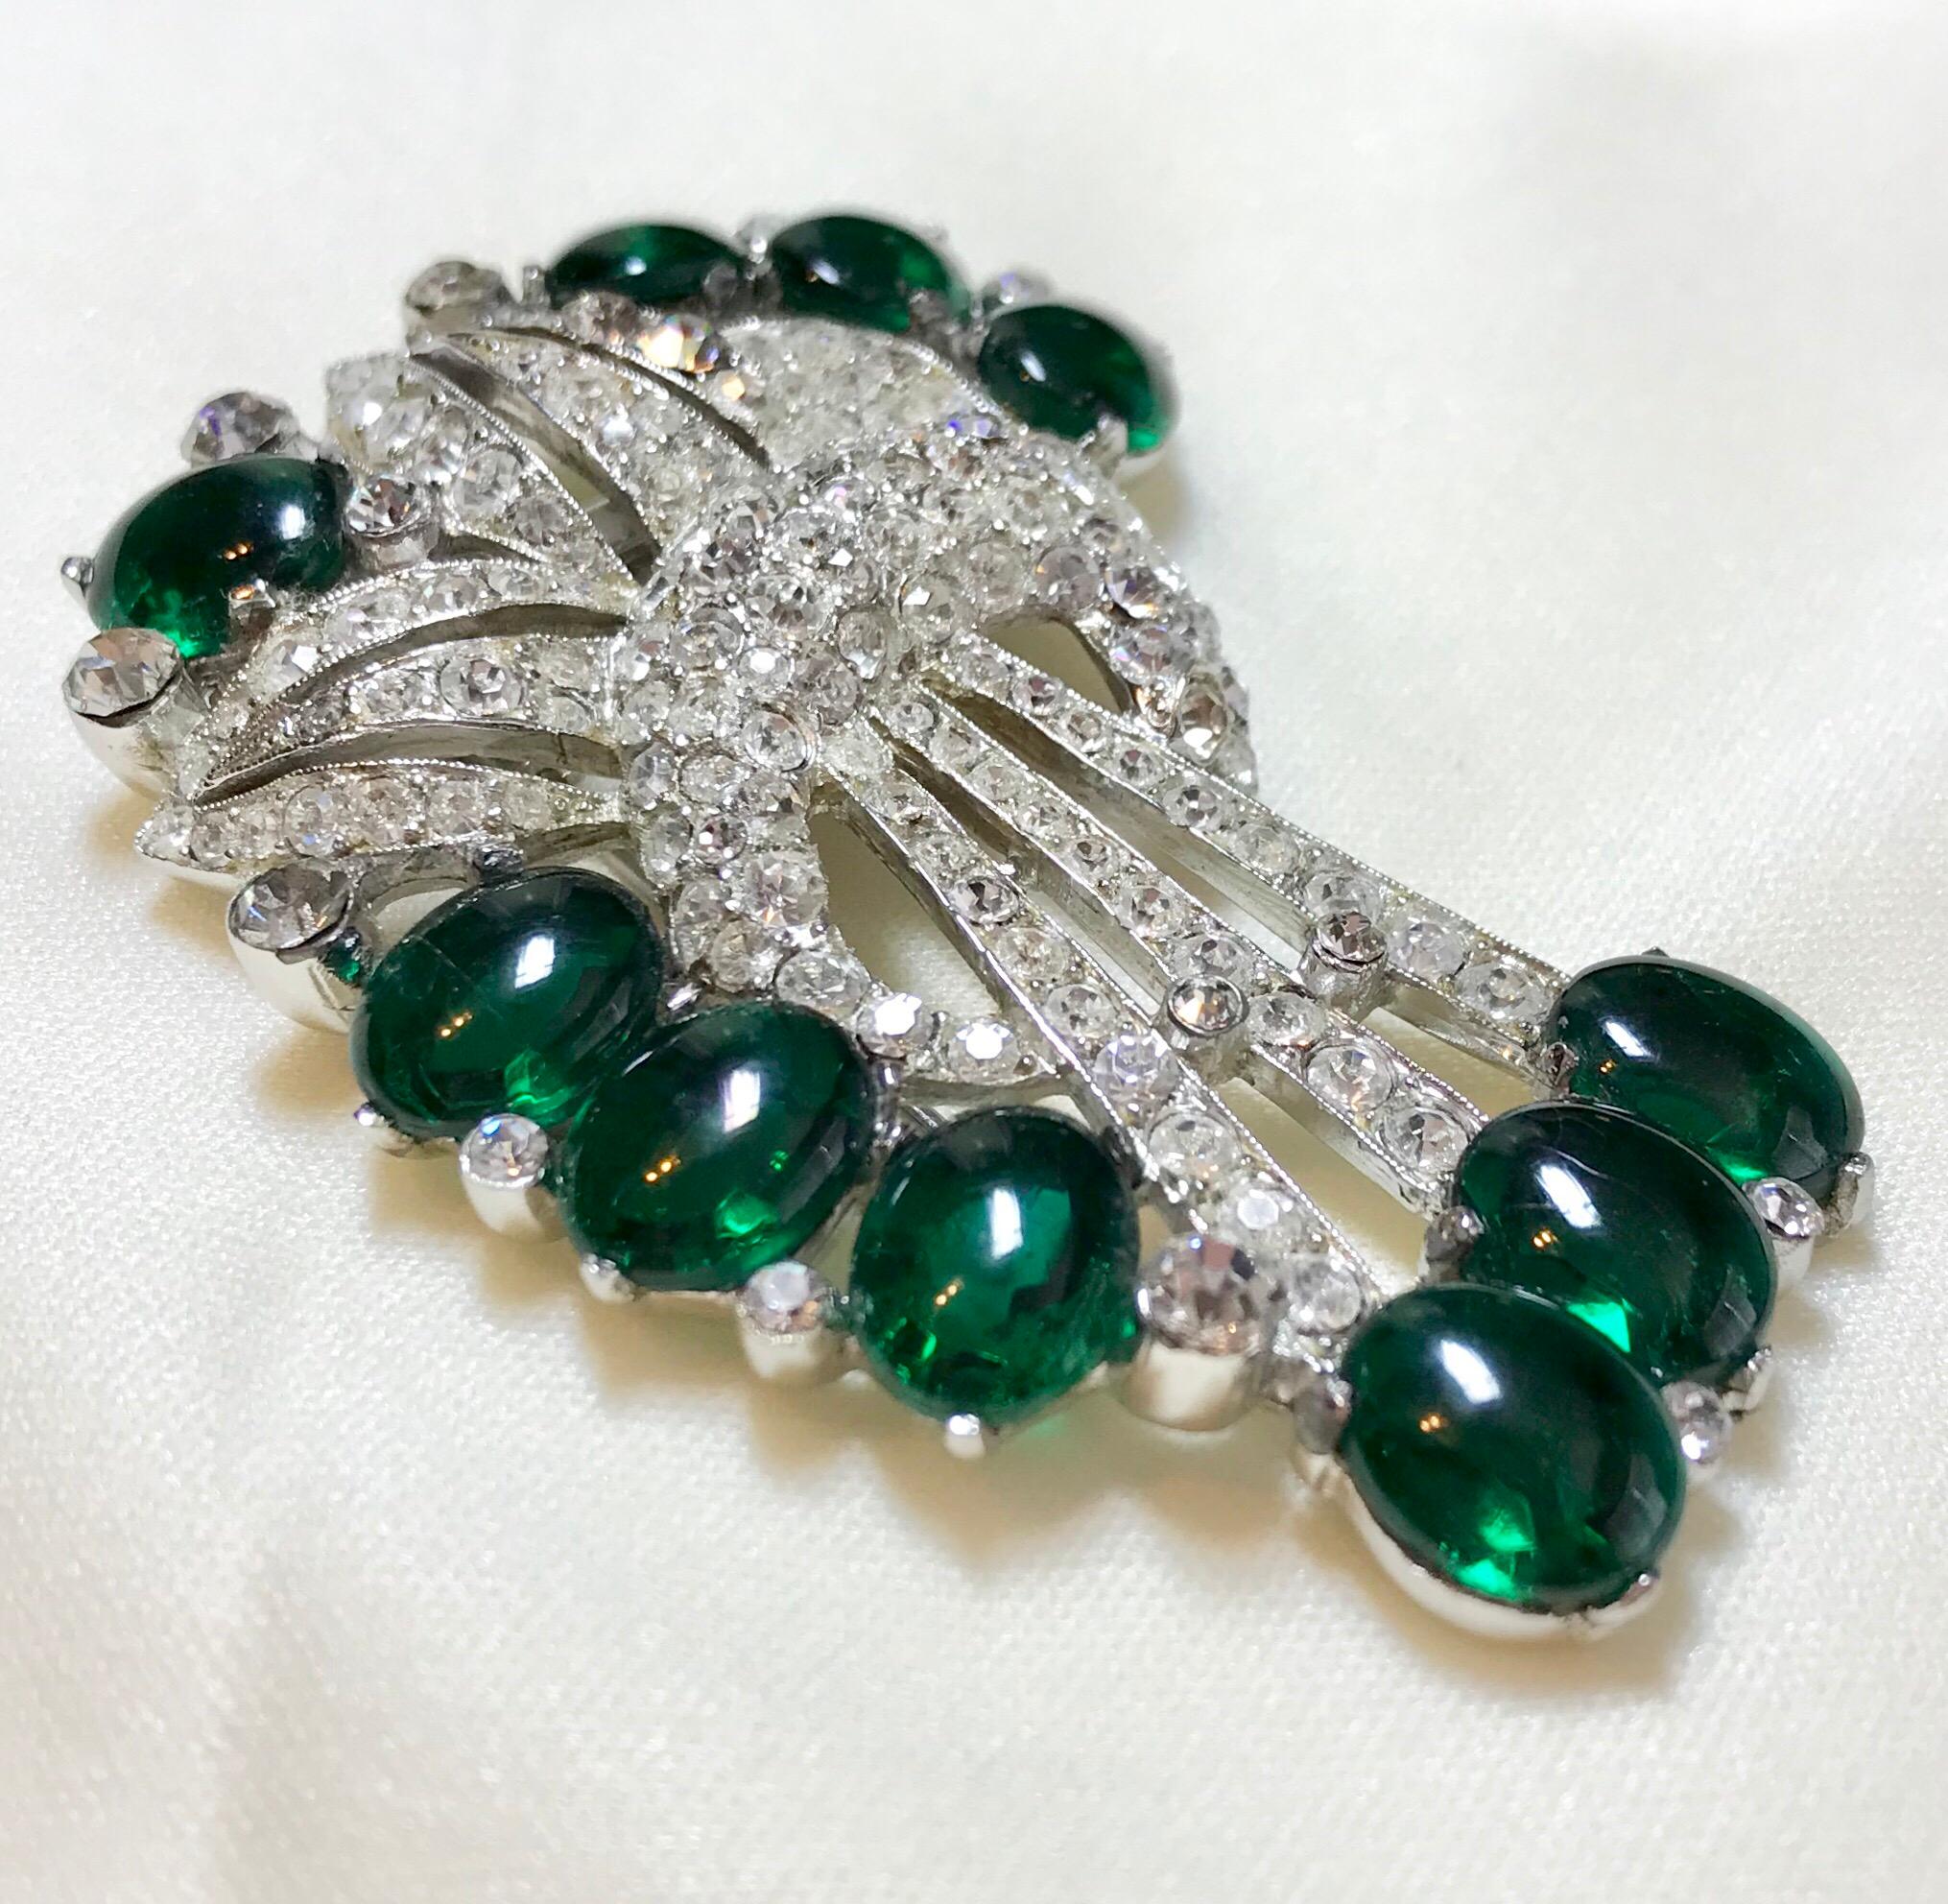 Circa 1930s Coro Emerald Green Cabochon & Rhinestone Brooch/Clip In Good Condition For Sale In Long Beach, CA